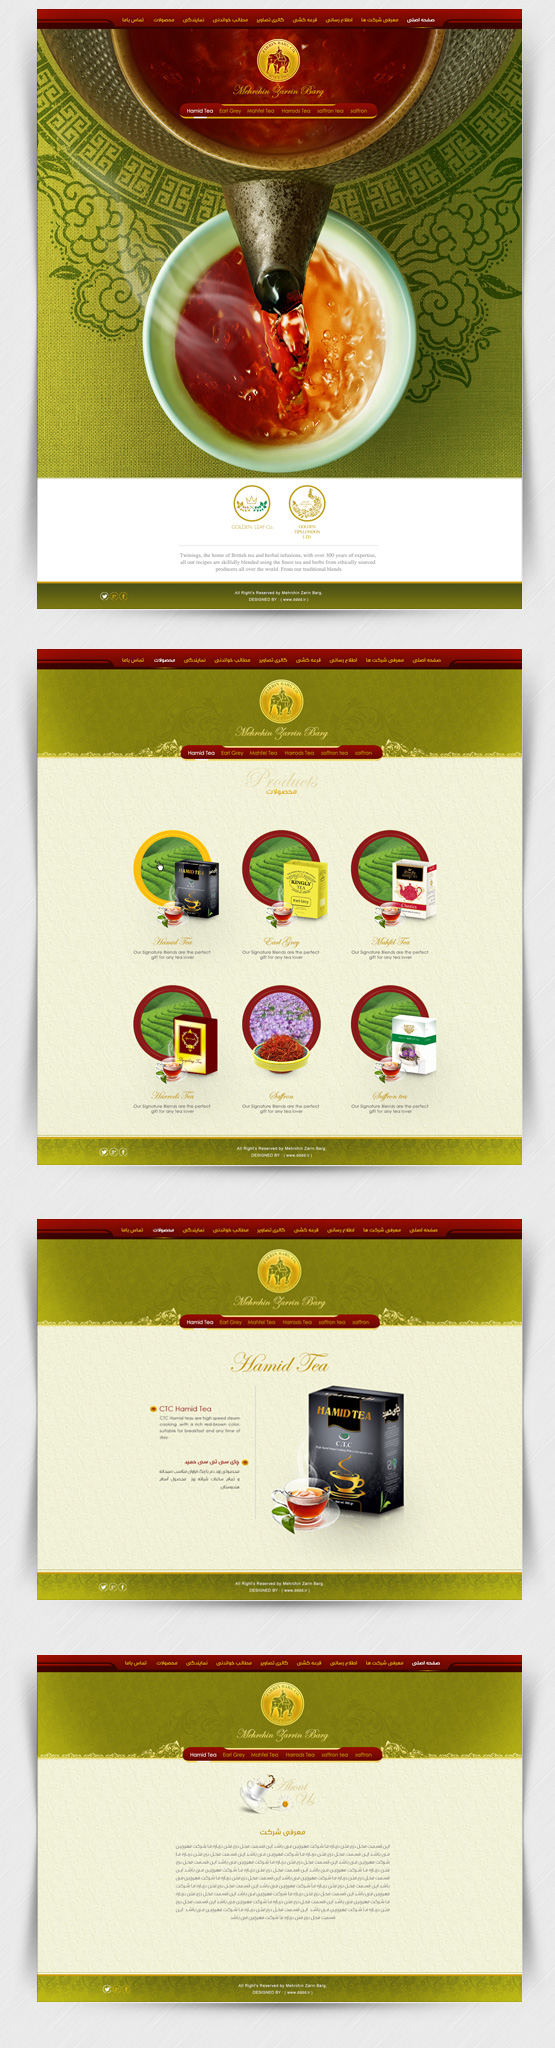 طراحی سایت شرکت چای مهرچین